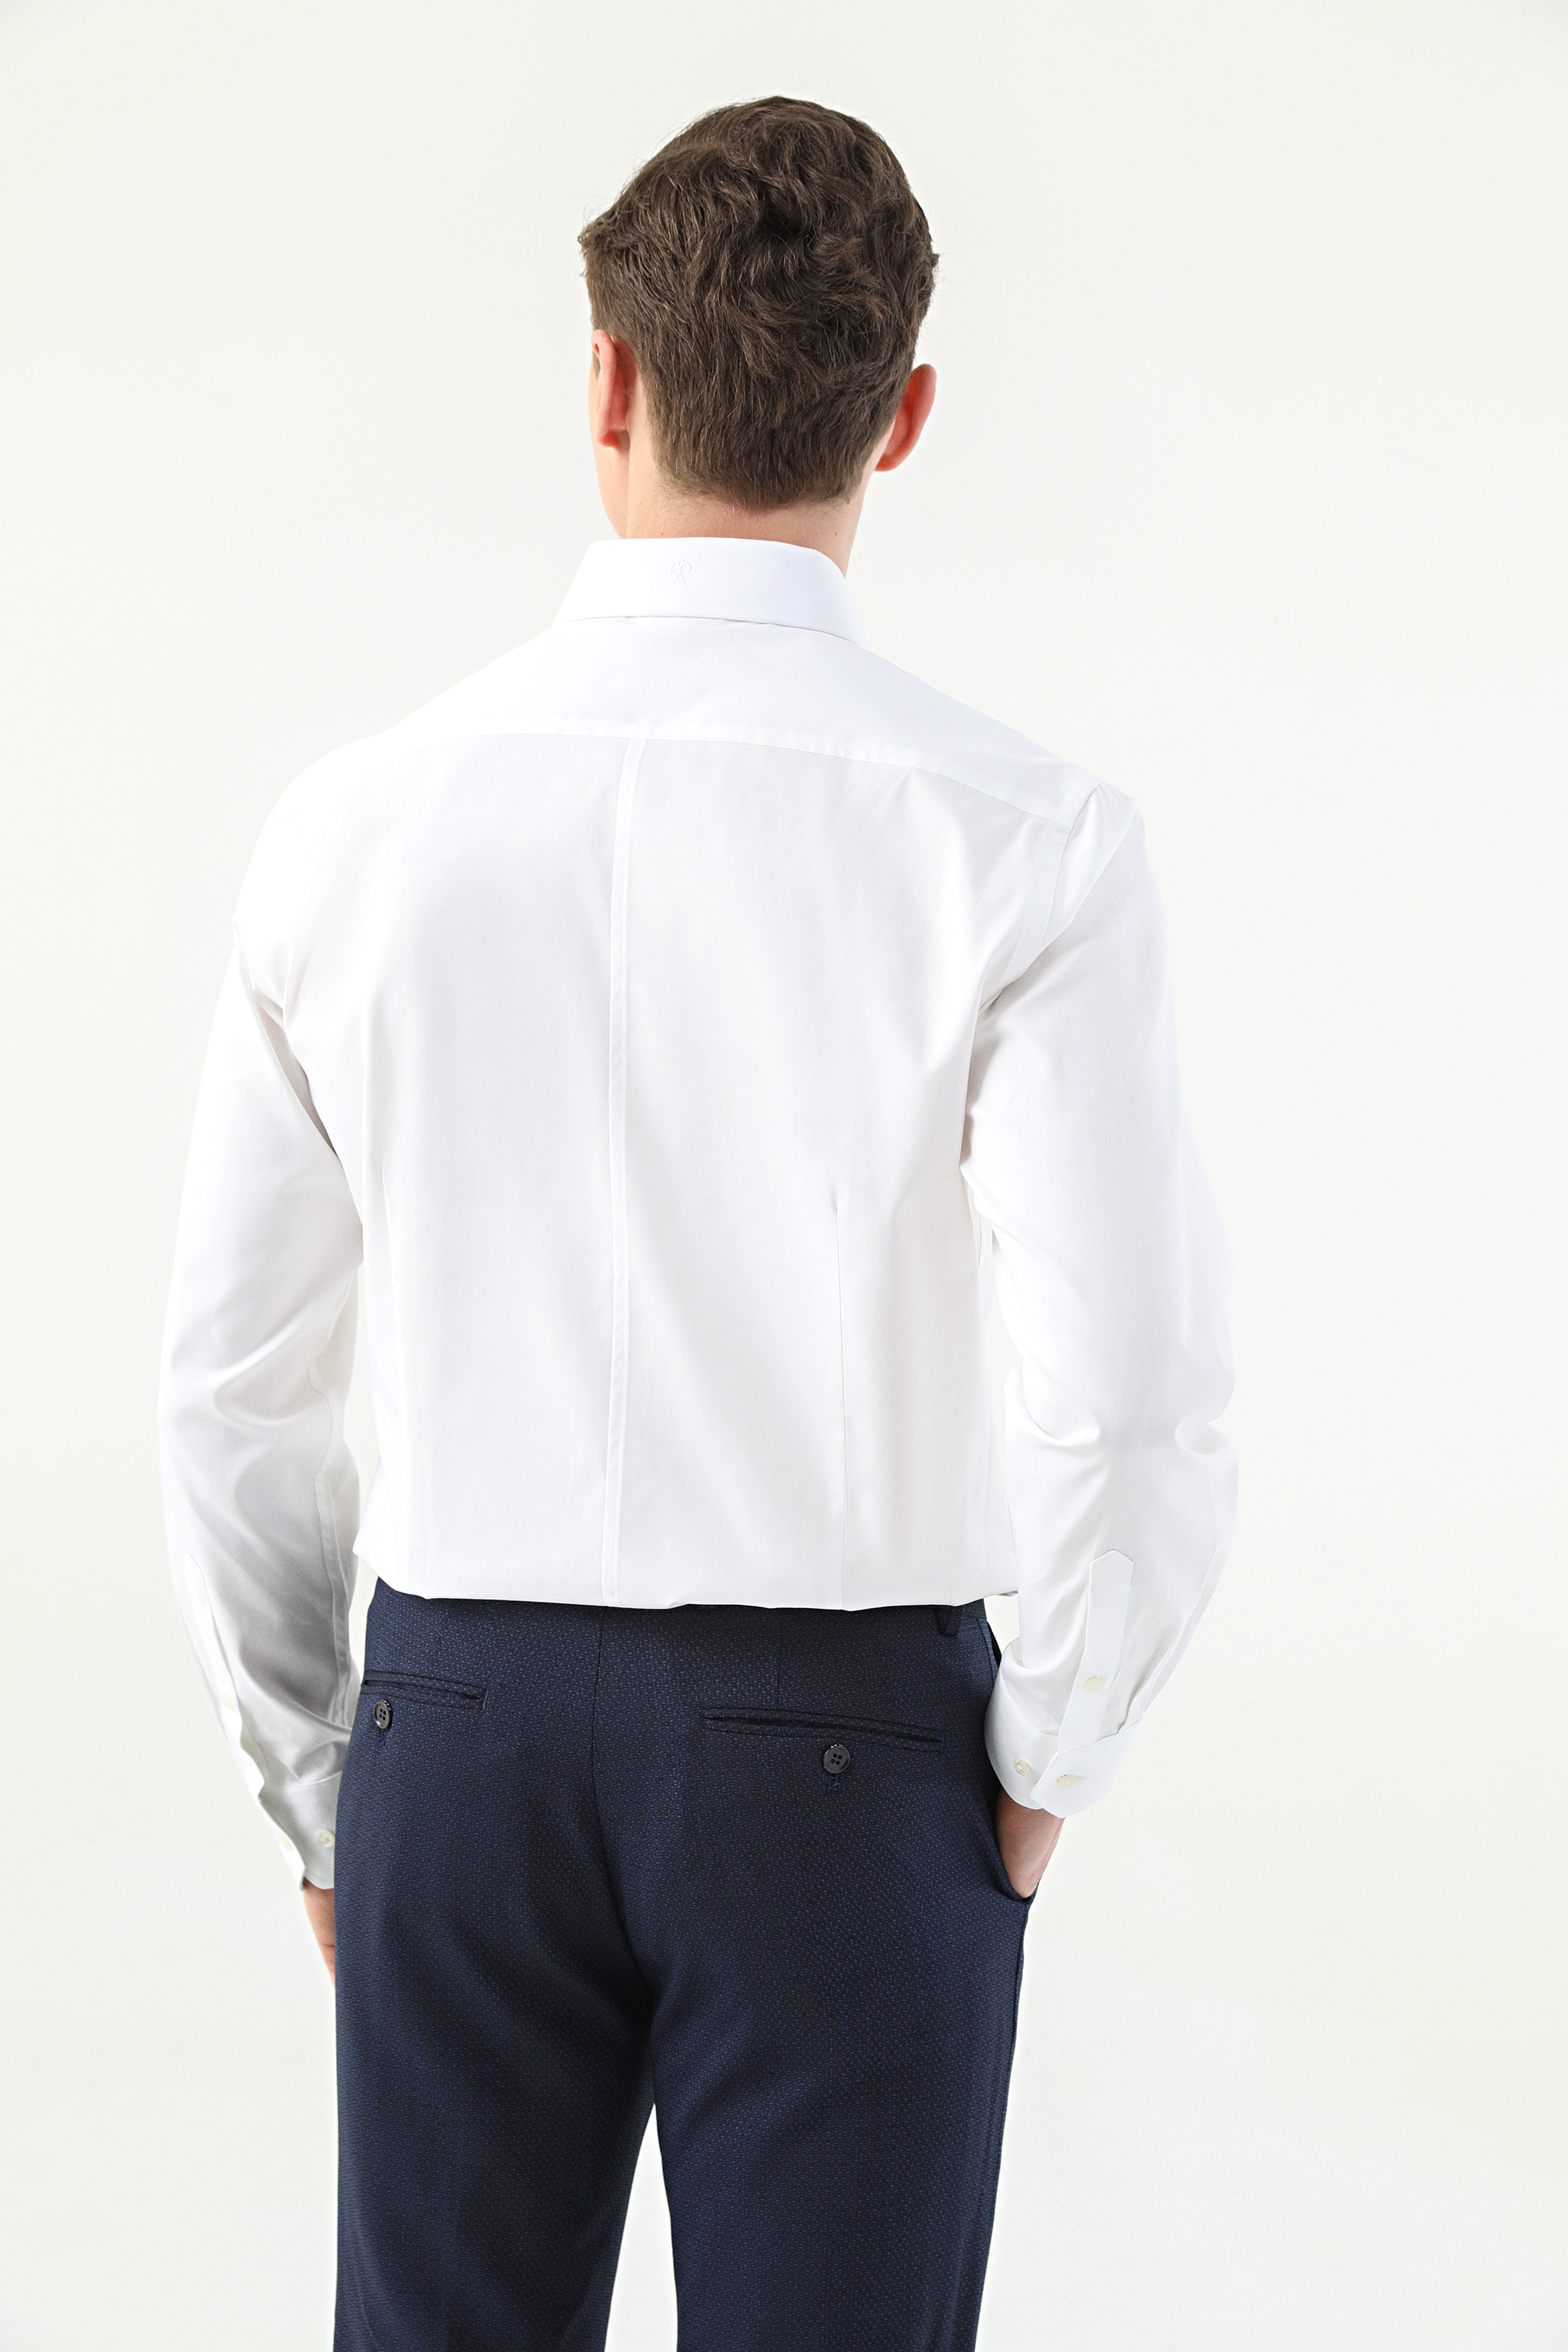 Damat Tween Damat Slim Fit Beyaz Desenli Nano Care Gömlek. 4